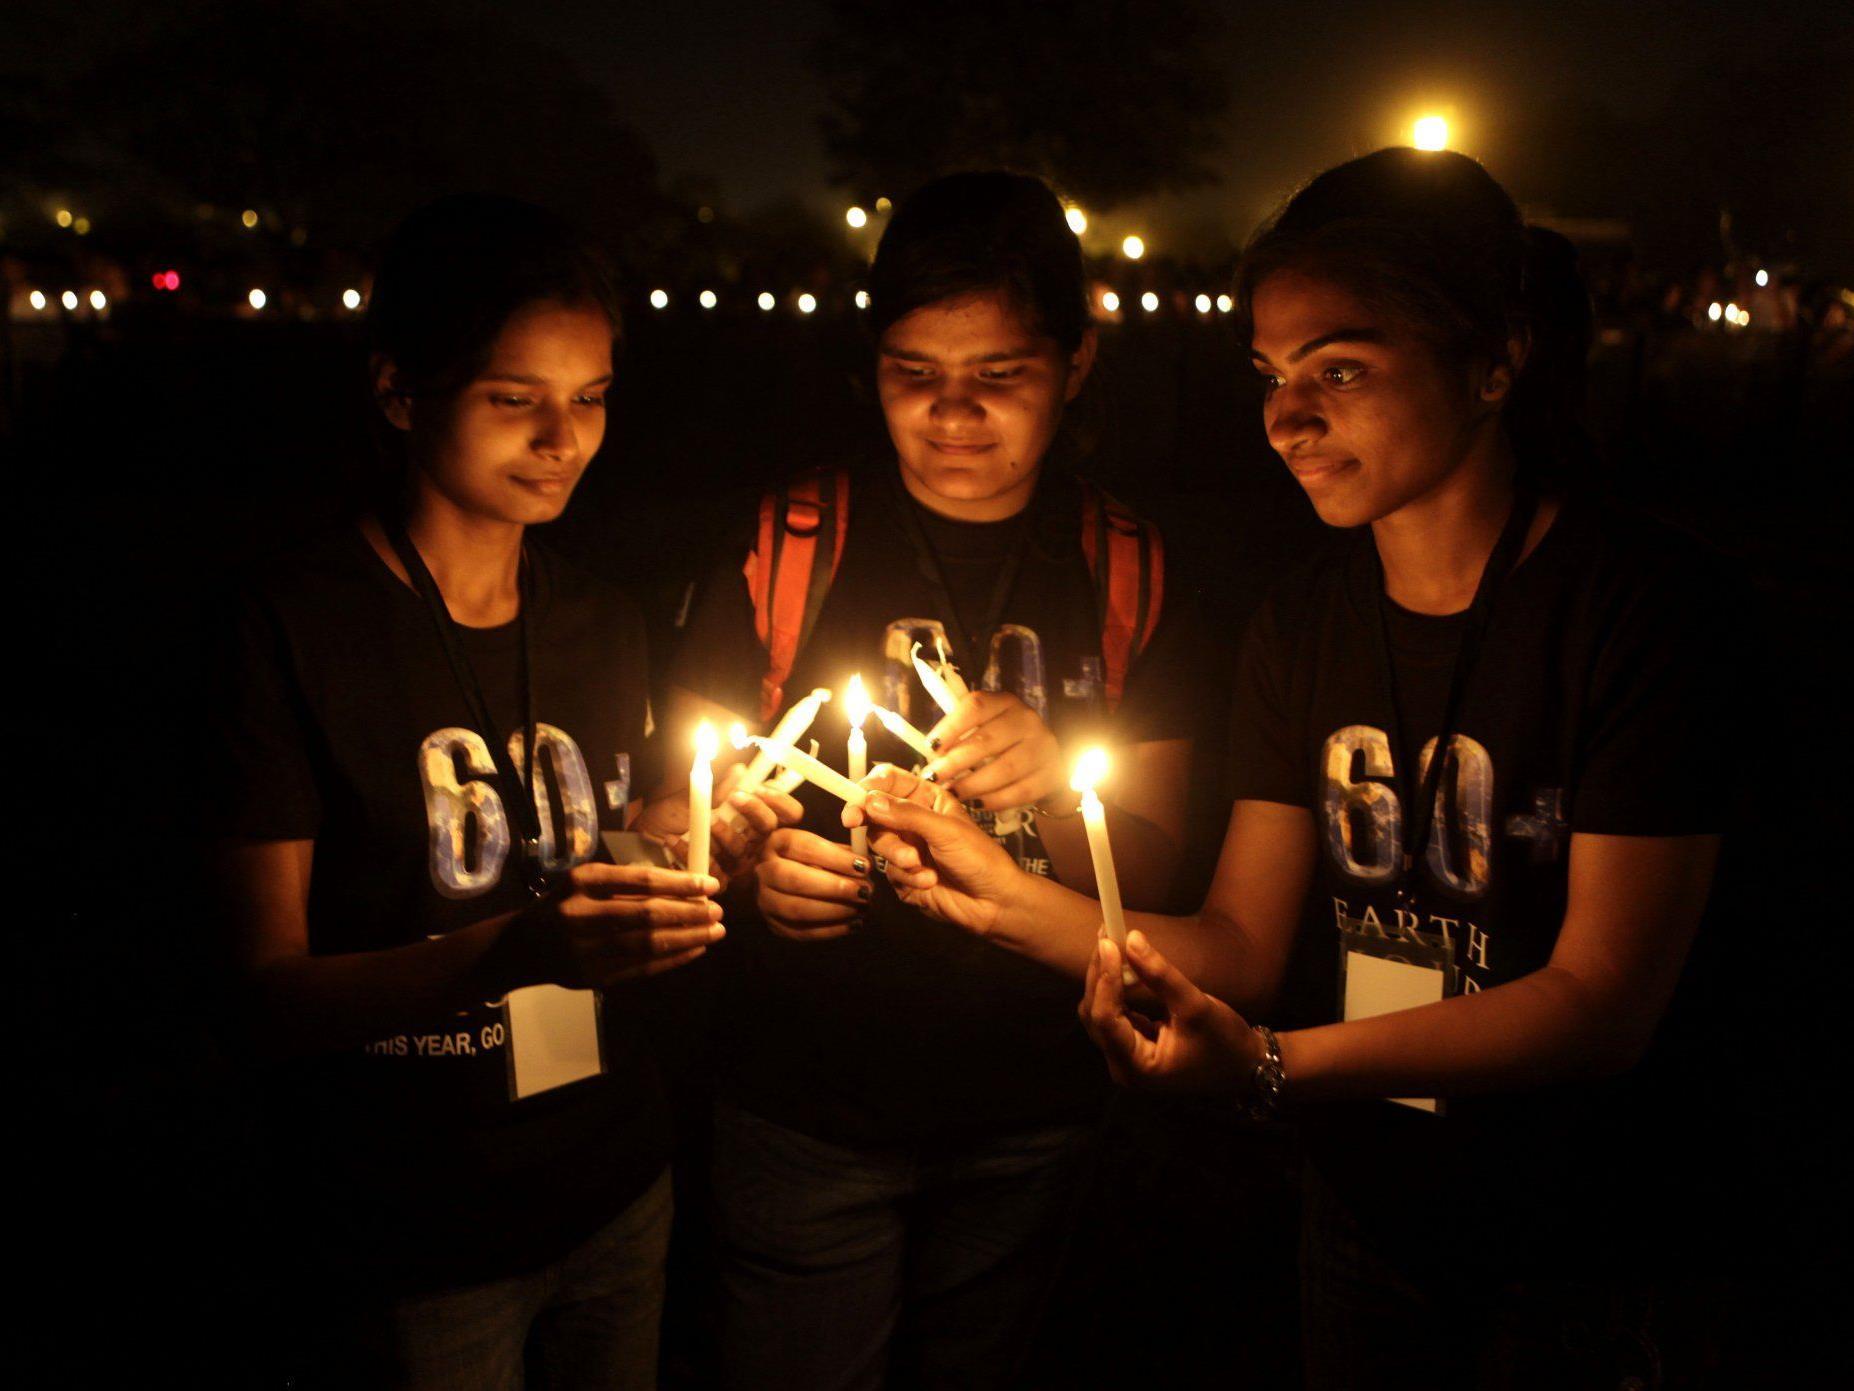 Vier Tipps für die Earth Hour am 31. März: Ein Samstagabend bei Kerzenschein.